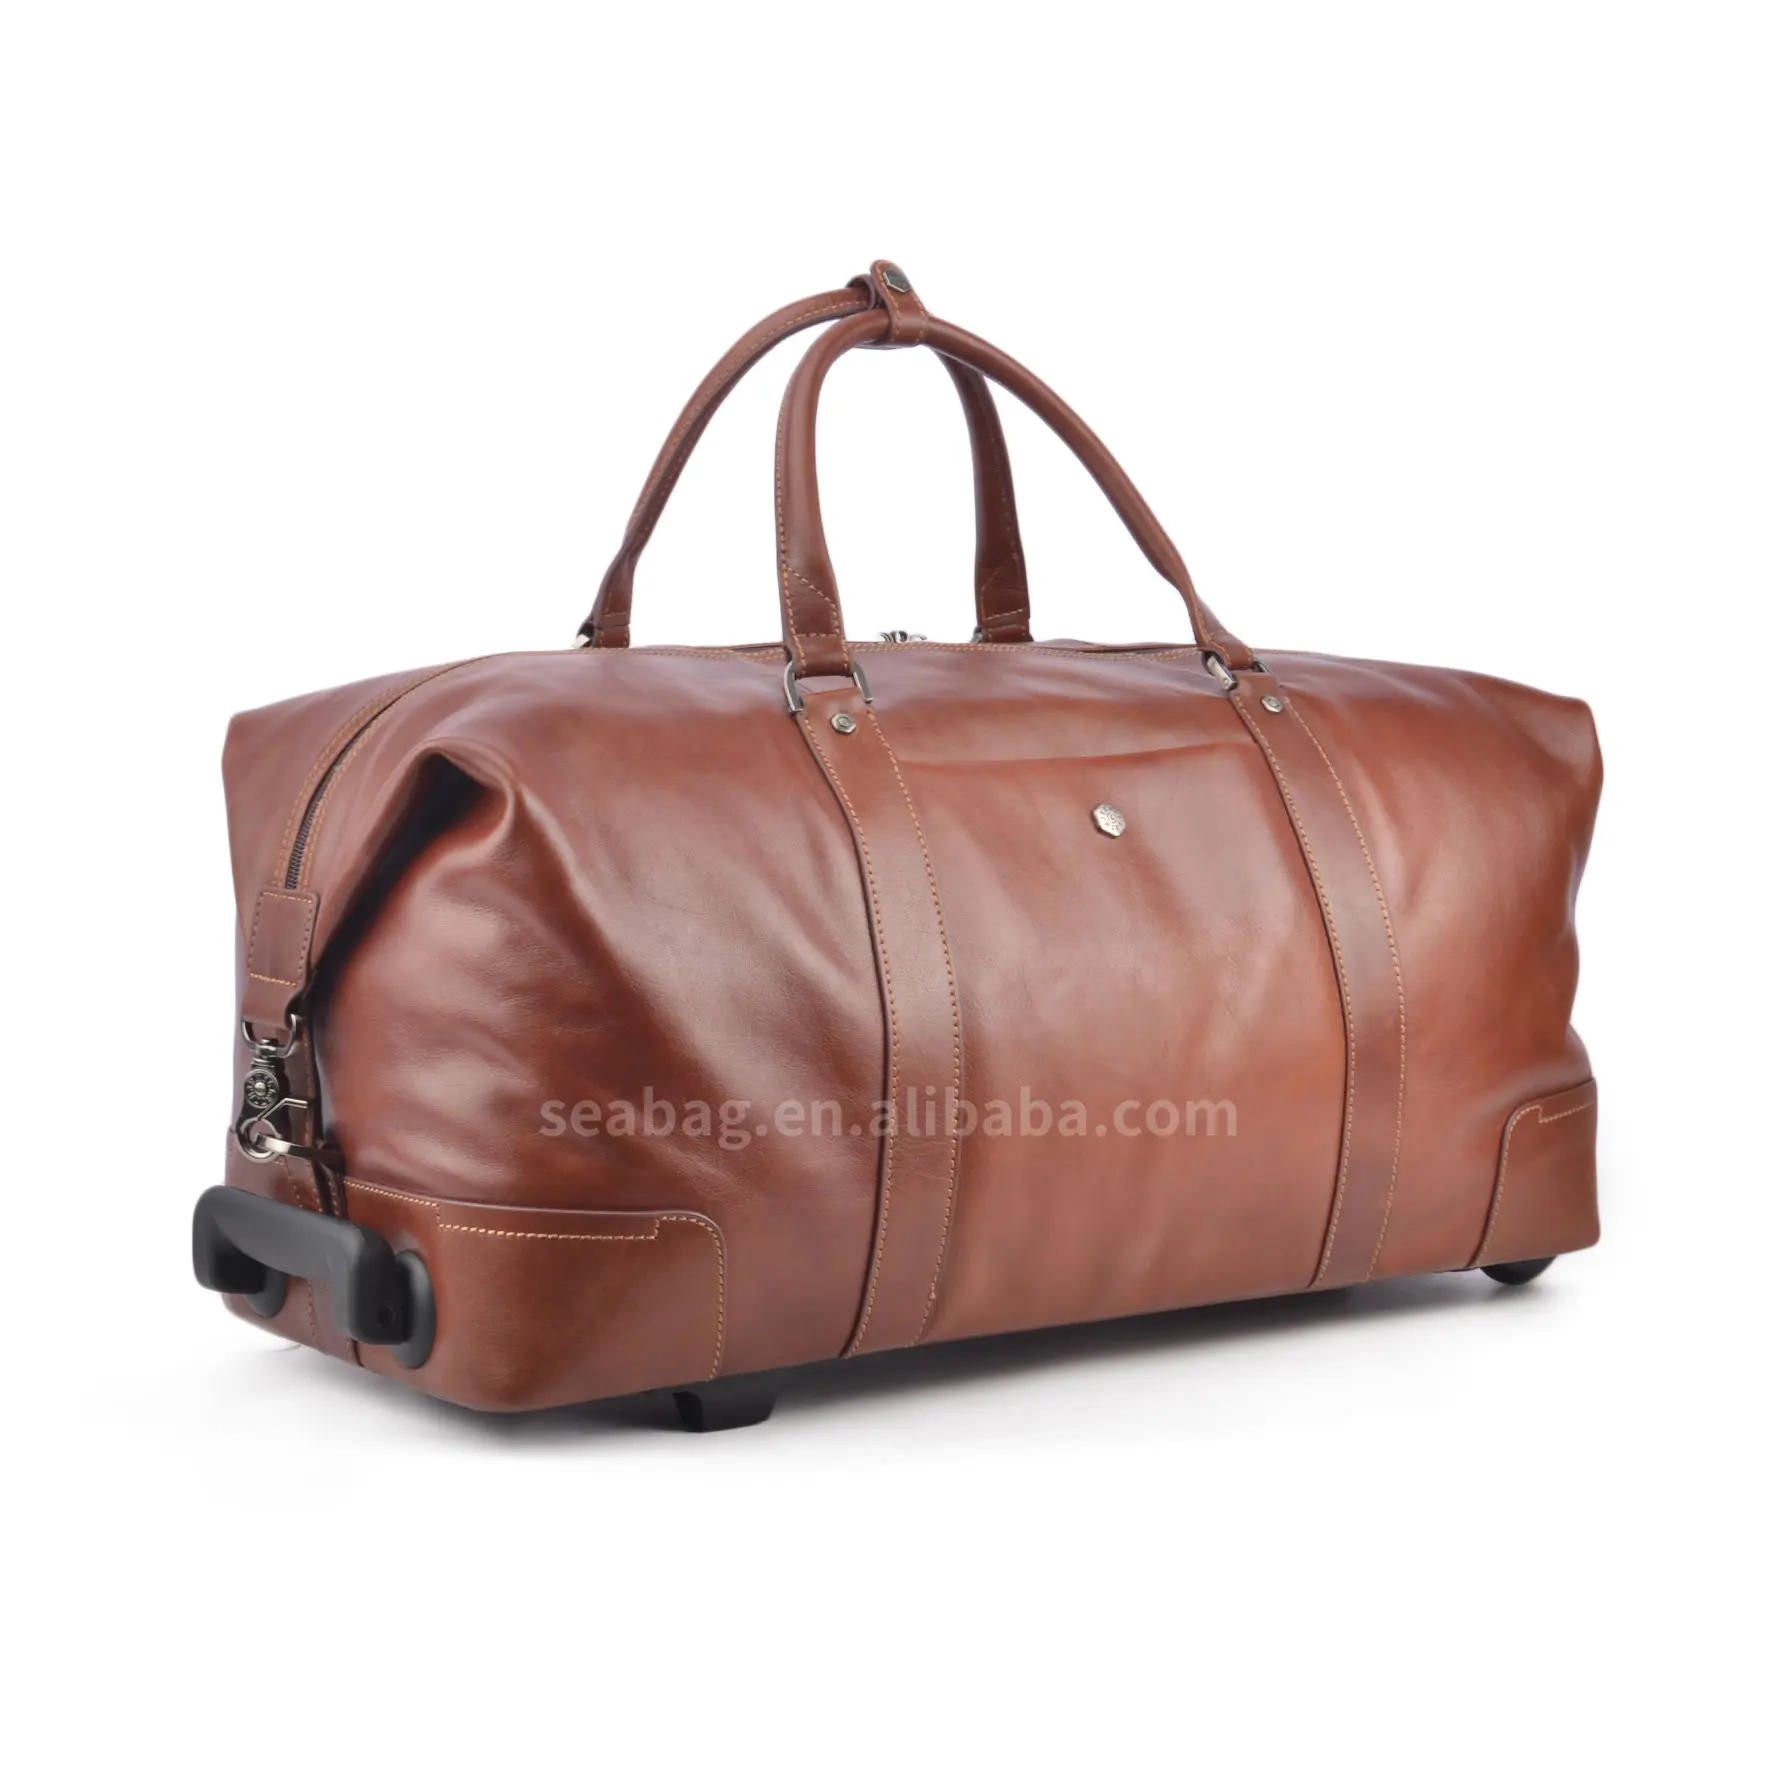 도매 고품질 럭셔리 디자인 가죽 트롤리 가방 큰 바퀴 비즈니스 여행 가방 핸드백 남성 수하물 가방